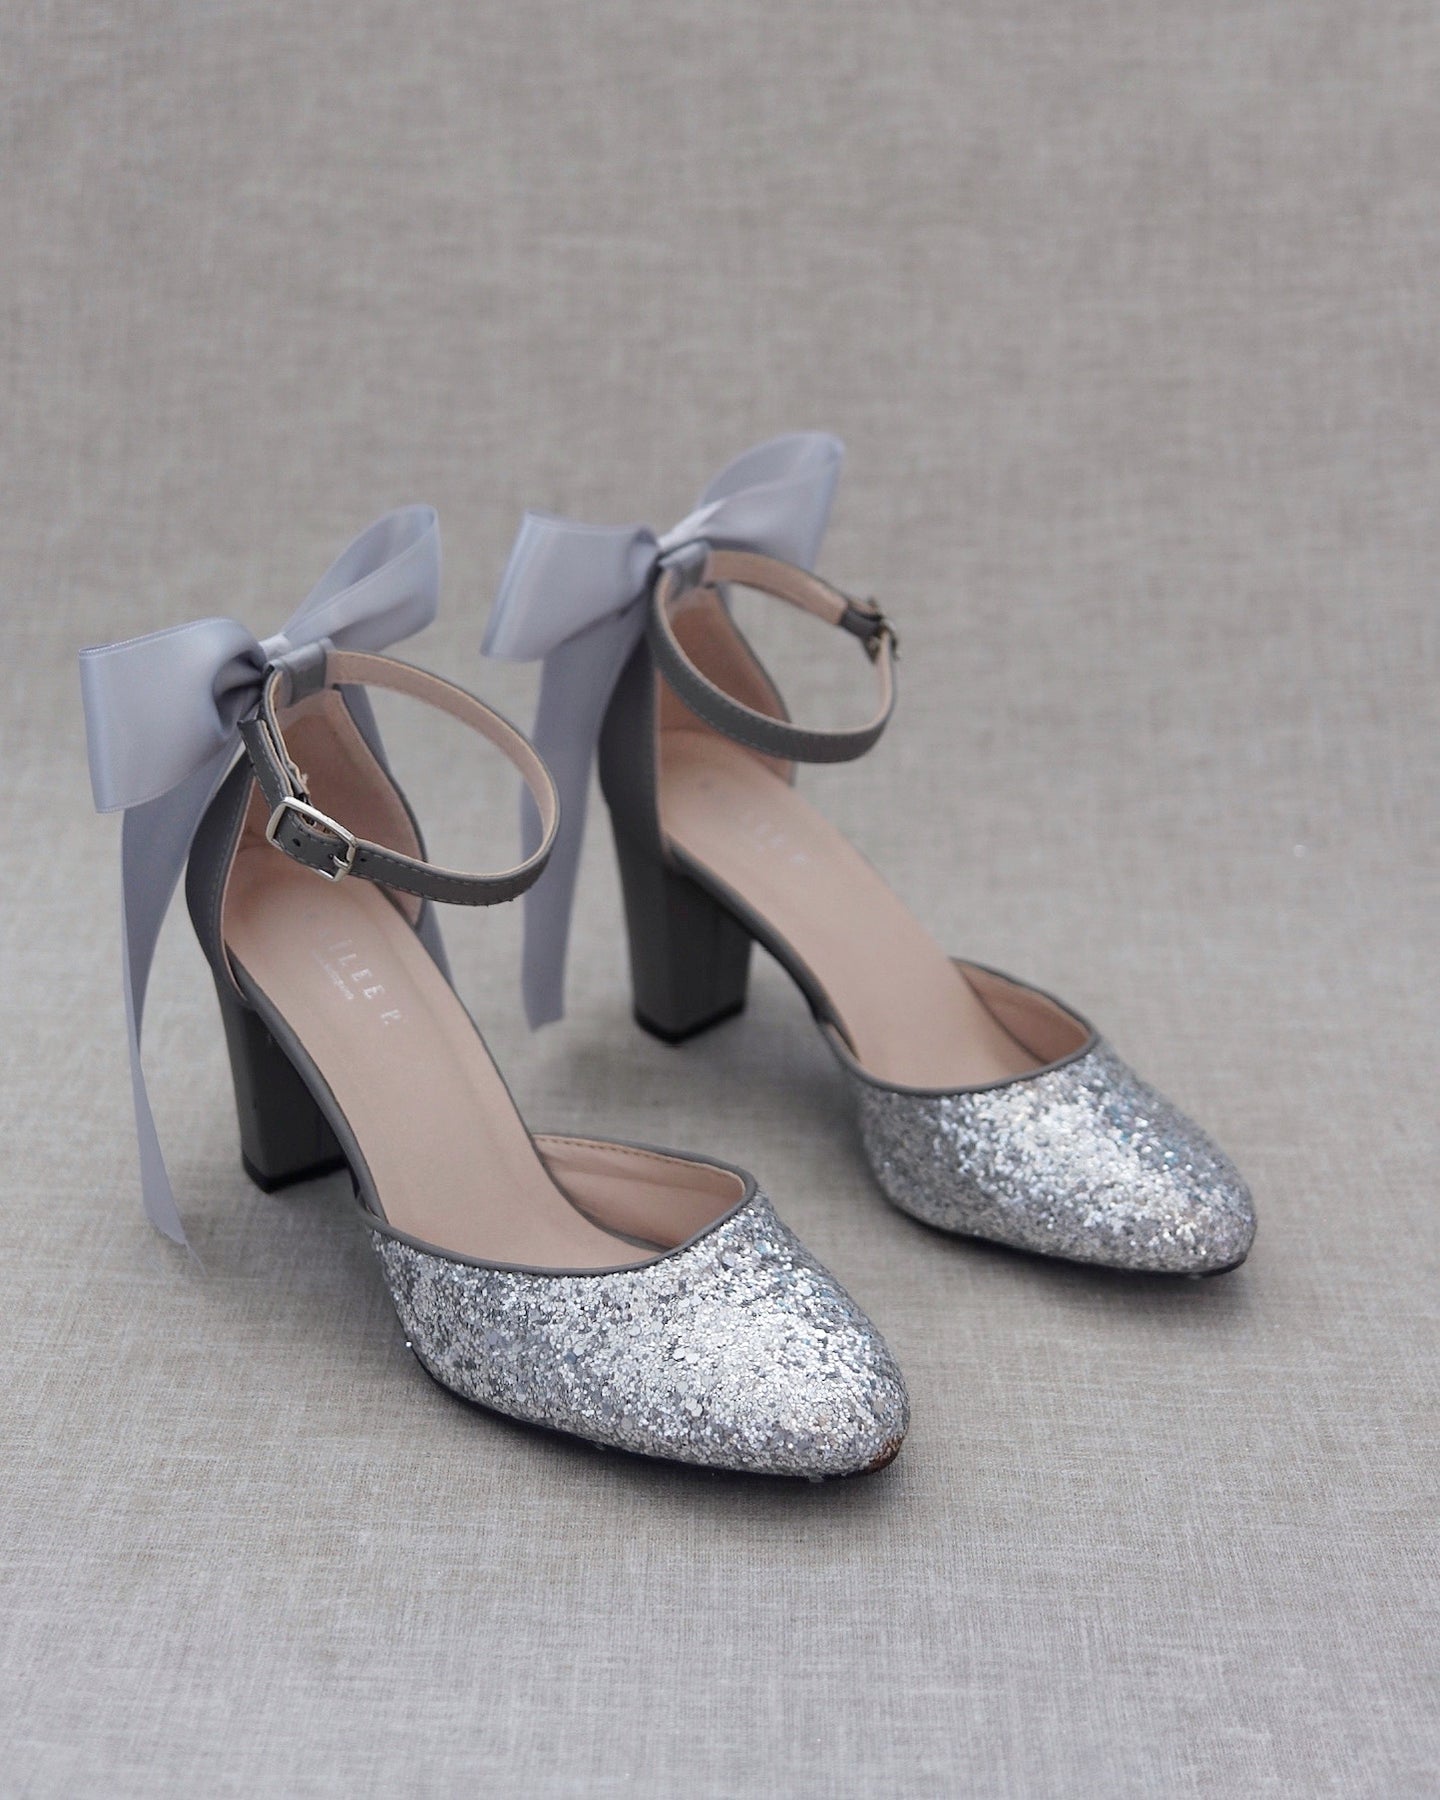 Dream Pairs Metallic Silver Glitter Open Toe Ankle Strap Block Heels Size  8.5 | eBay